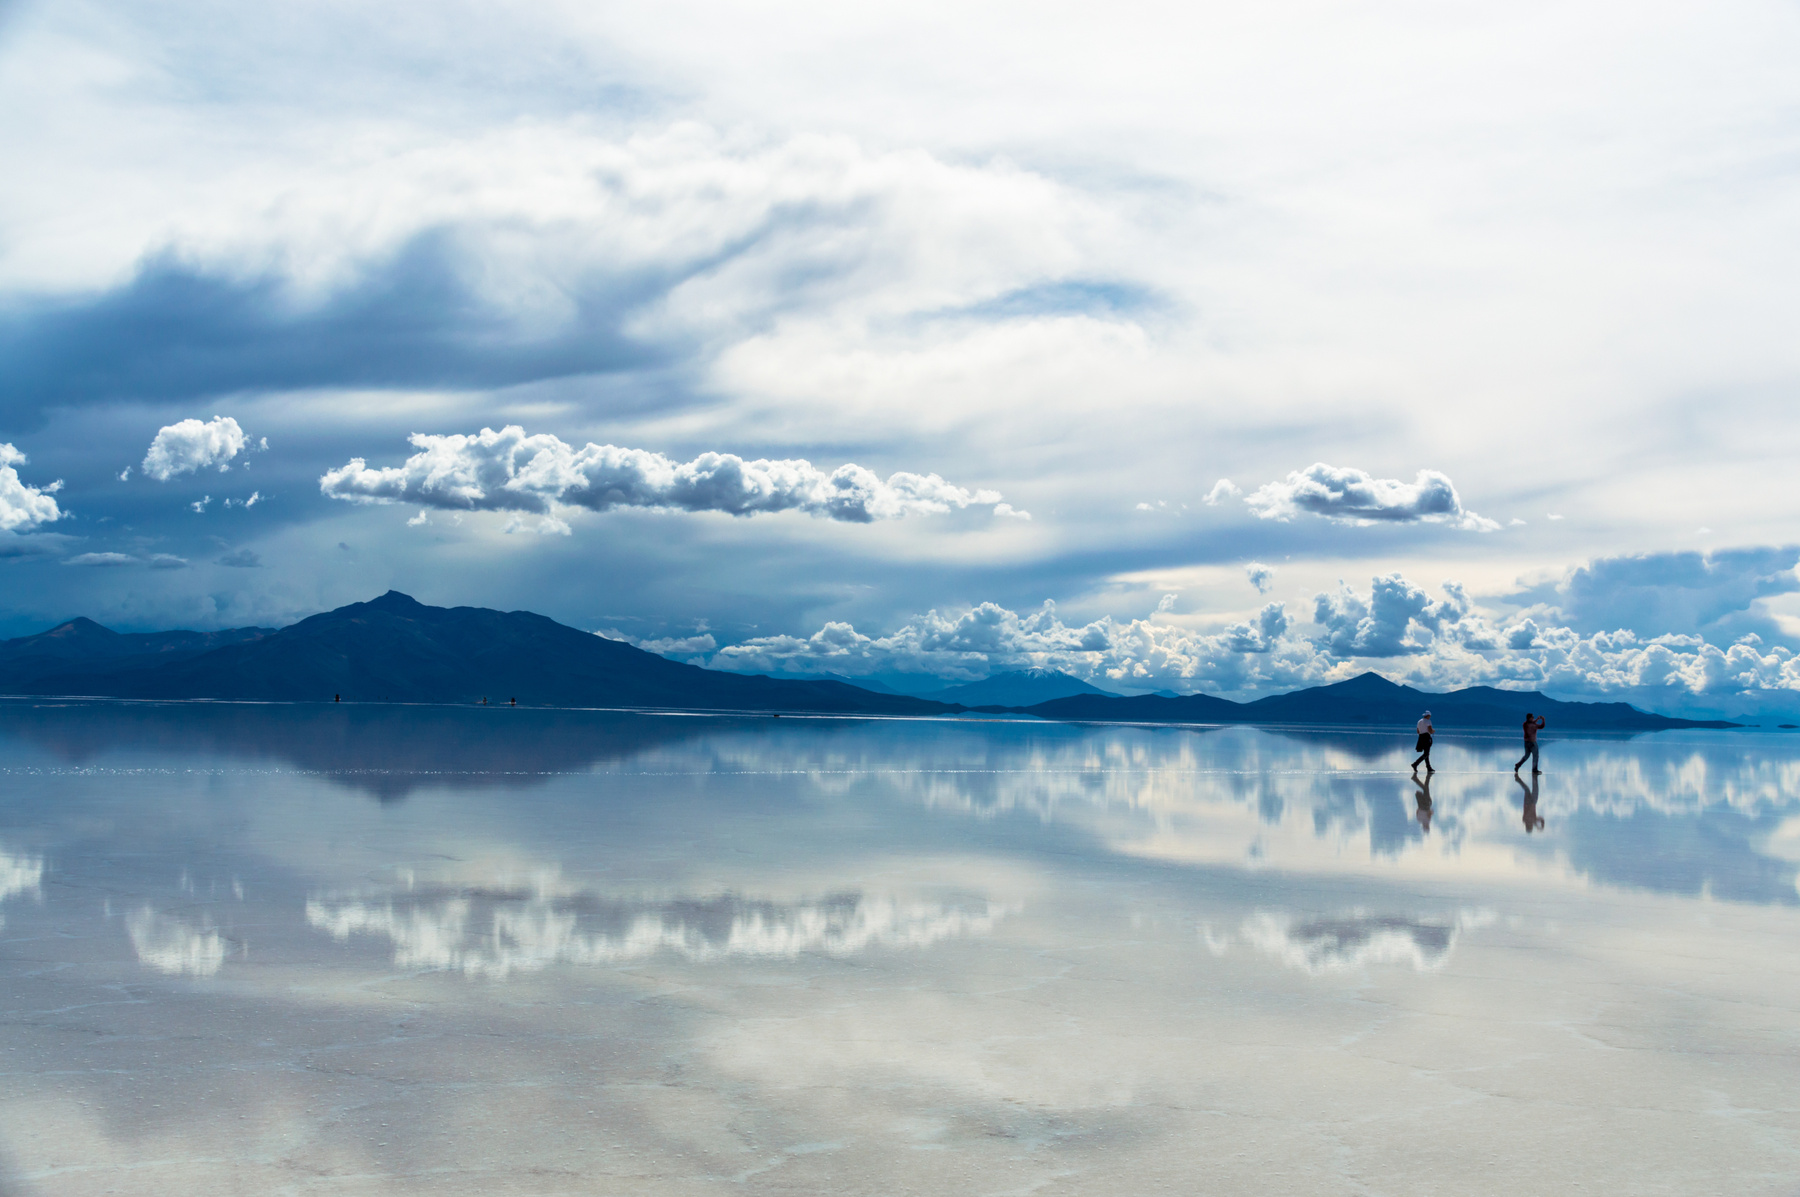 A Salar de Uyuni a világ legnagyobb kiterjedésű és egyben legmagasabban fekvő felszíni sómezeje. Sós mocsárként illetve sós sivatagként is meghatározható, mivel általában száraz, viszont időszakosan néhány cm-es vízréteg borítja, ilyenkor így tükröződik rajta az ég. Bolíviában, az ország délnyugati részén, az Andok hegyvonulatai közötti medencében fekszik. Forrás: Wikipedia